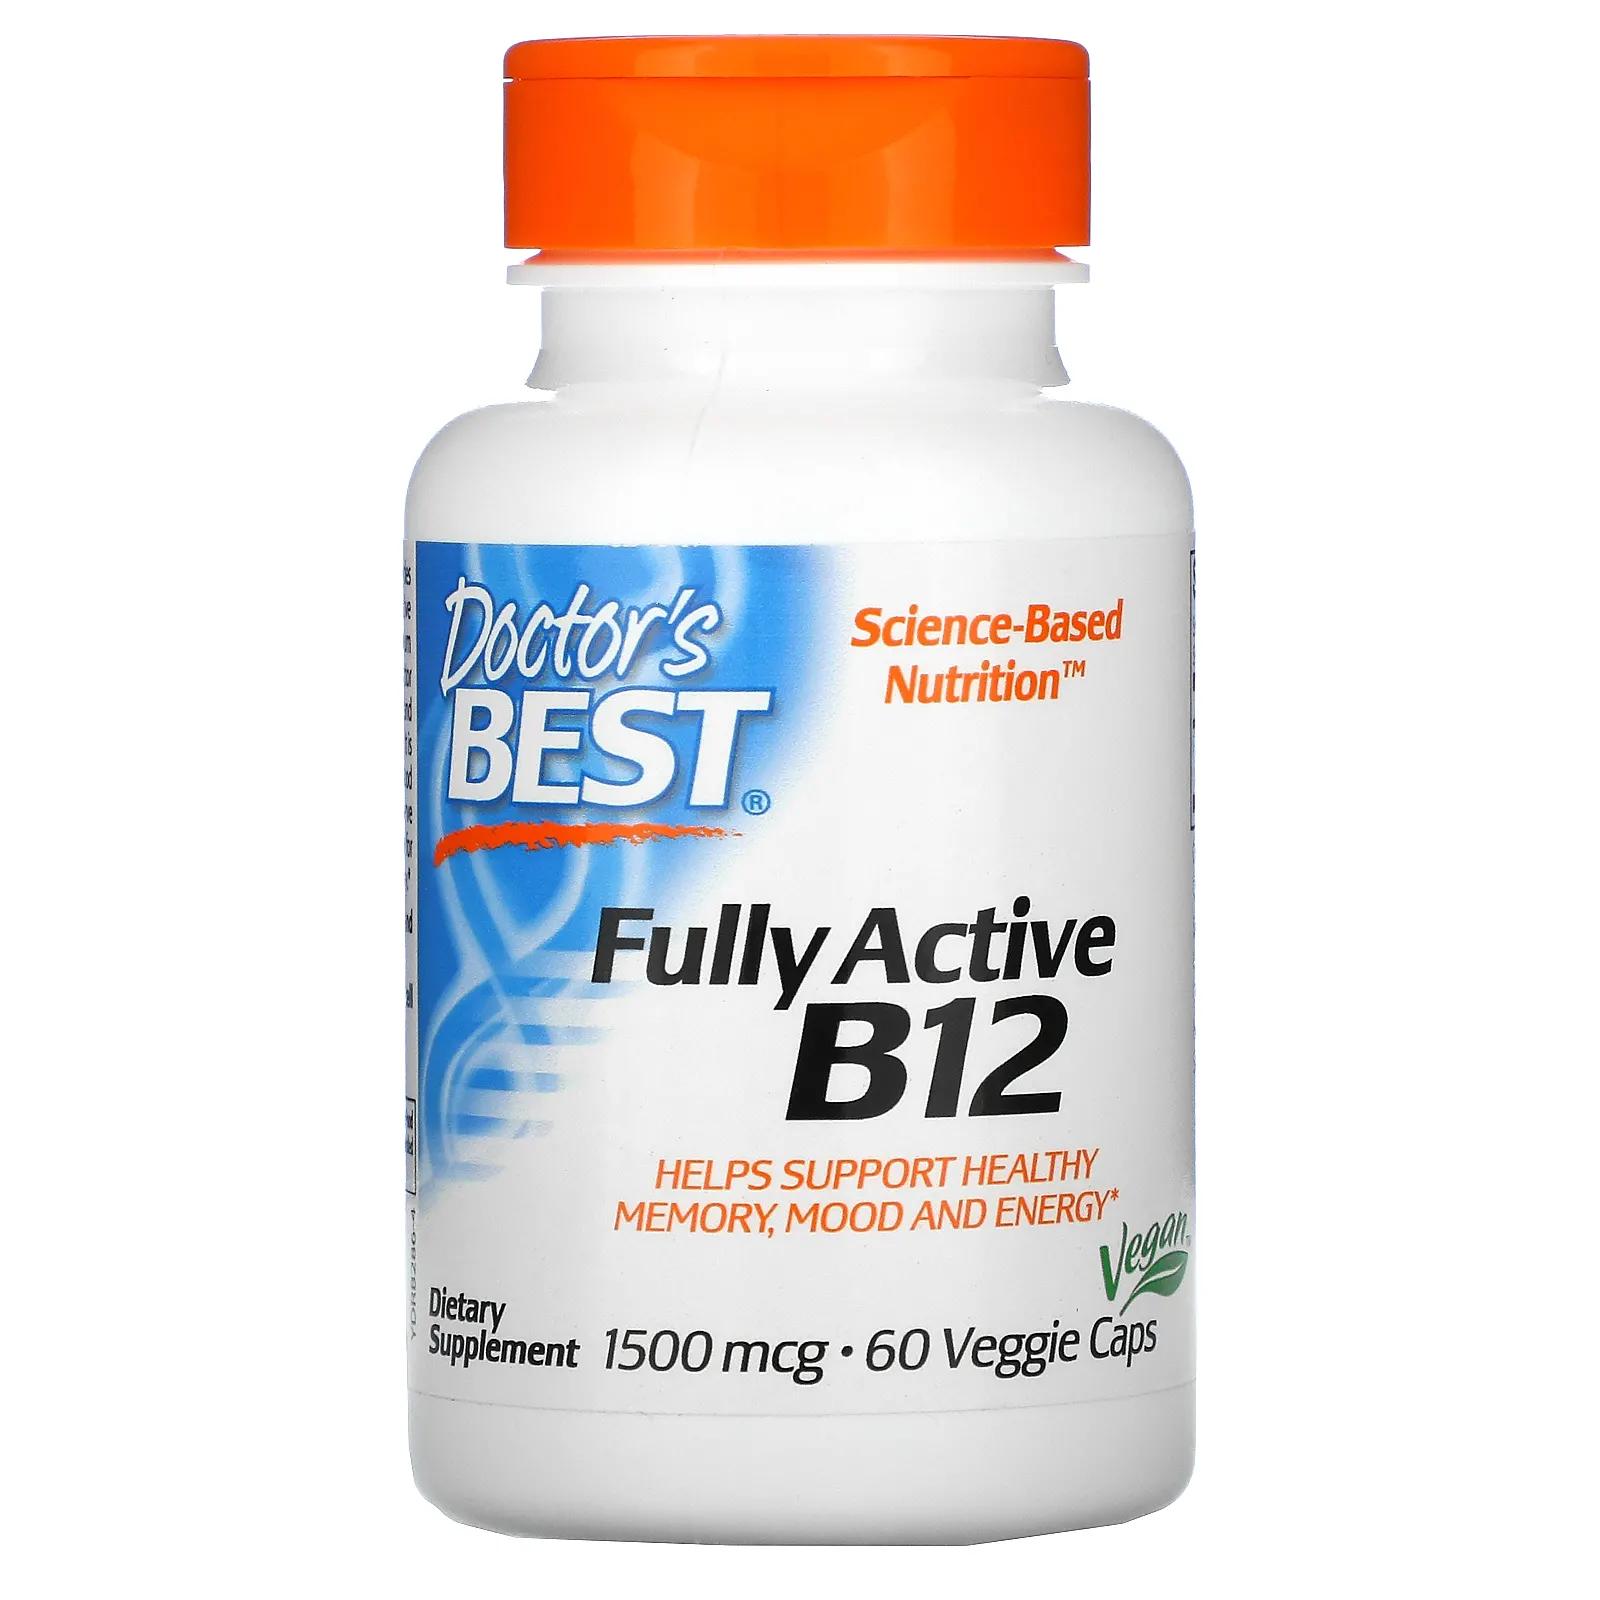 Doctor's Best Best Активный витамин B12 1500 мкг 60 растительных капсул активный витамин b12 doctor s best 1500 мкг 60 растительных капсул